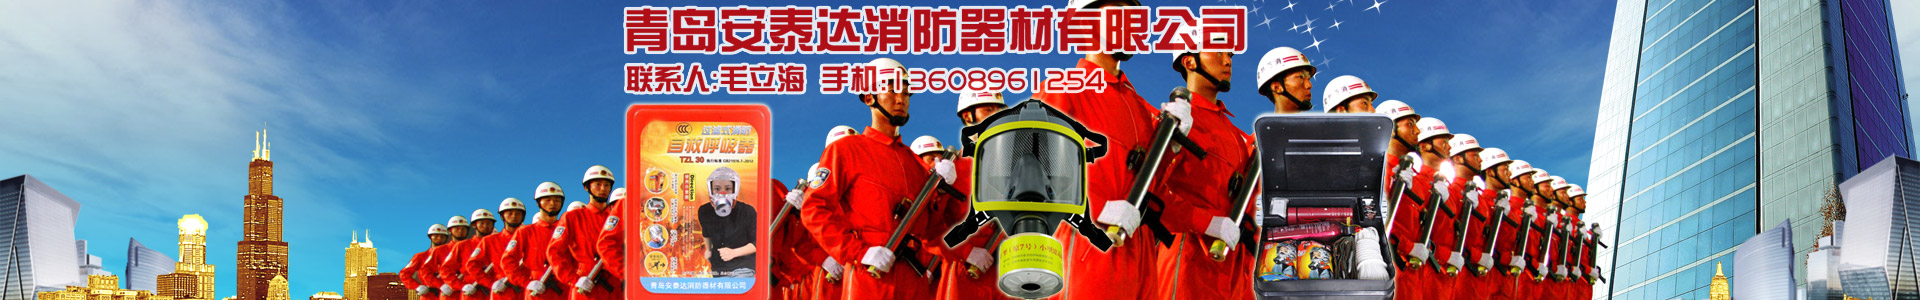 消防泵系列-青島安泰達消防器材有限公司-